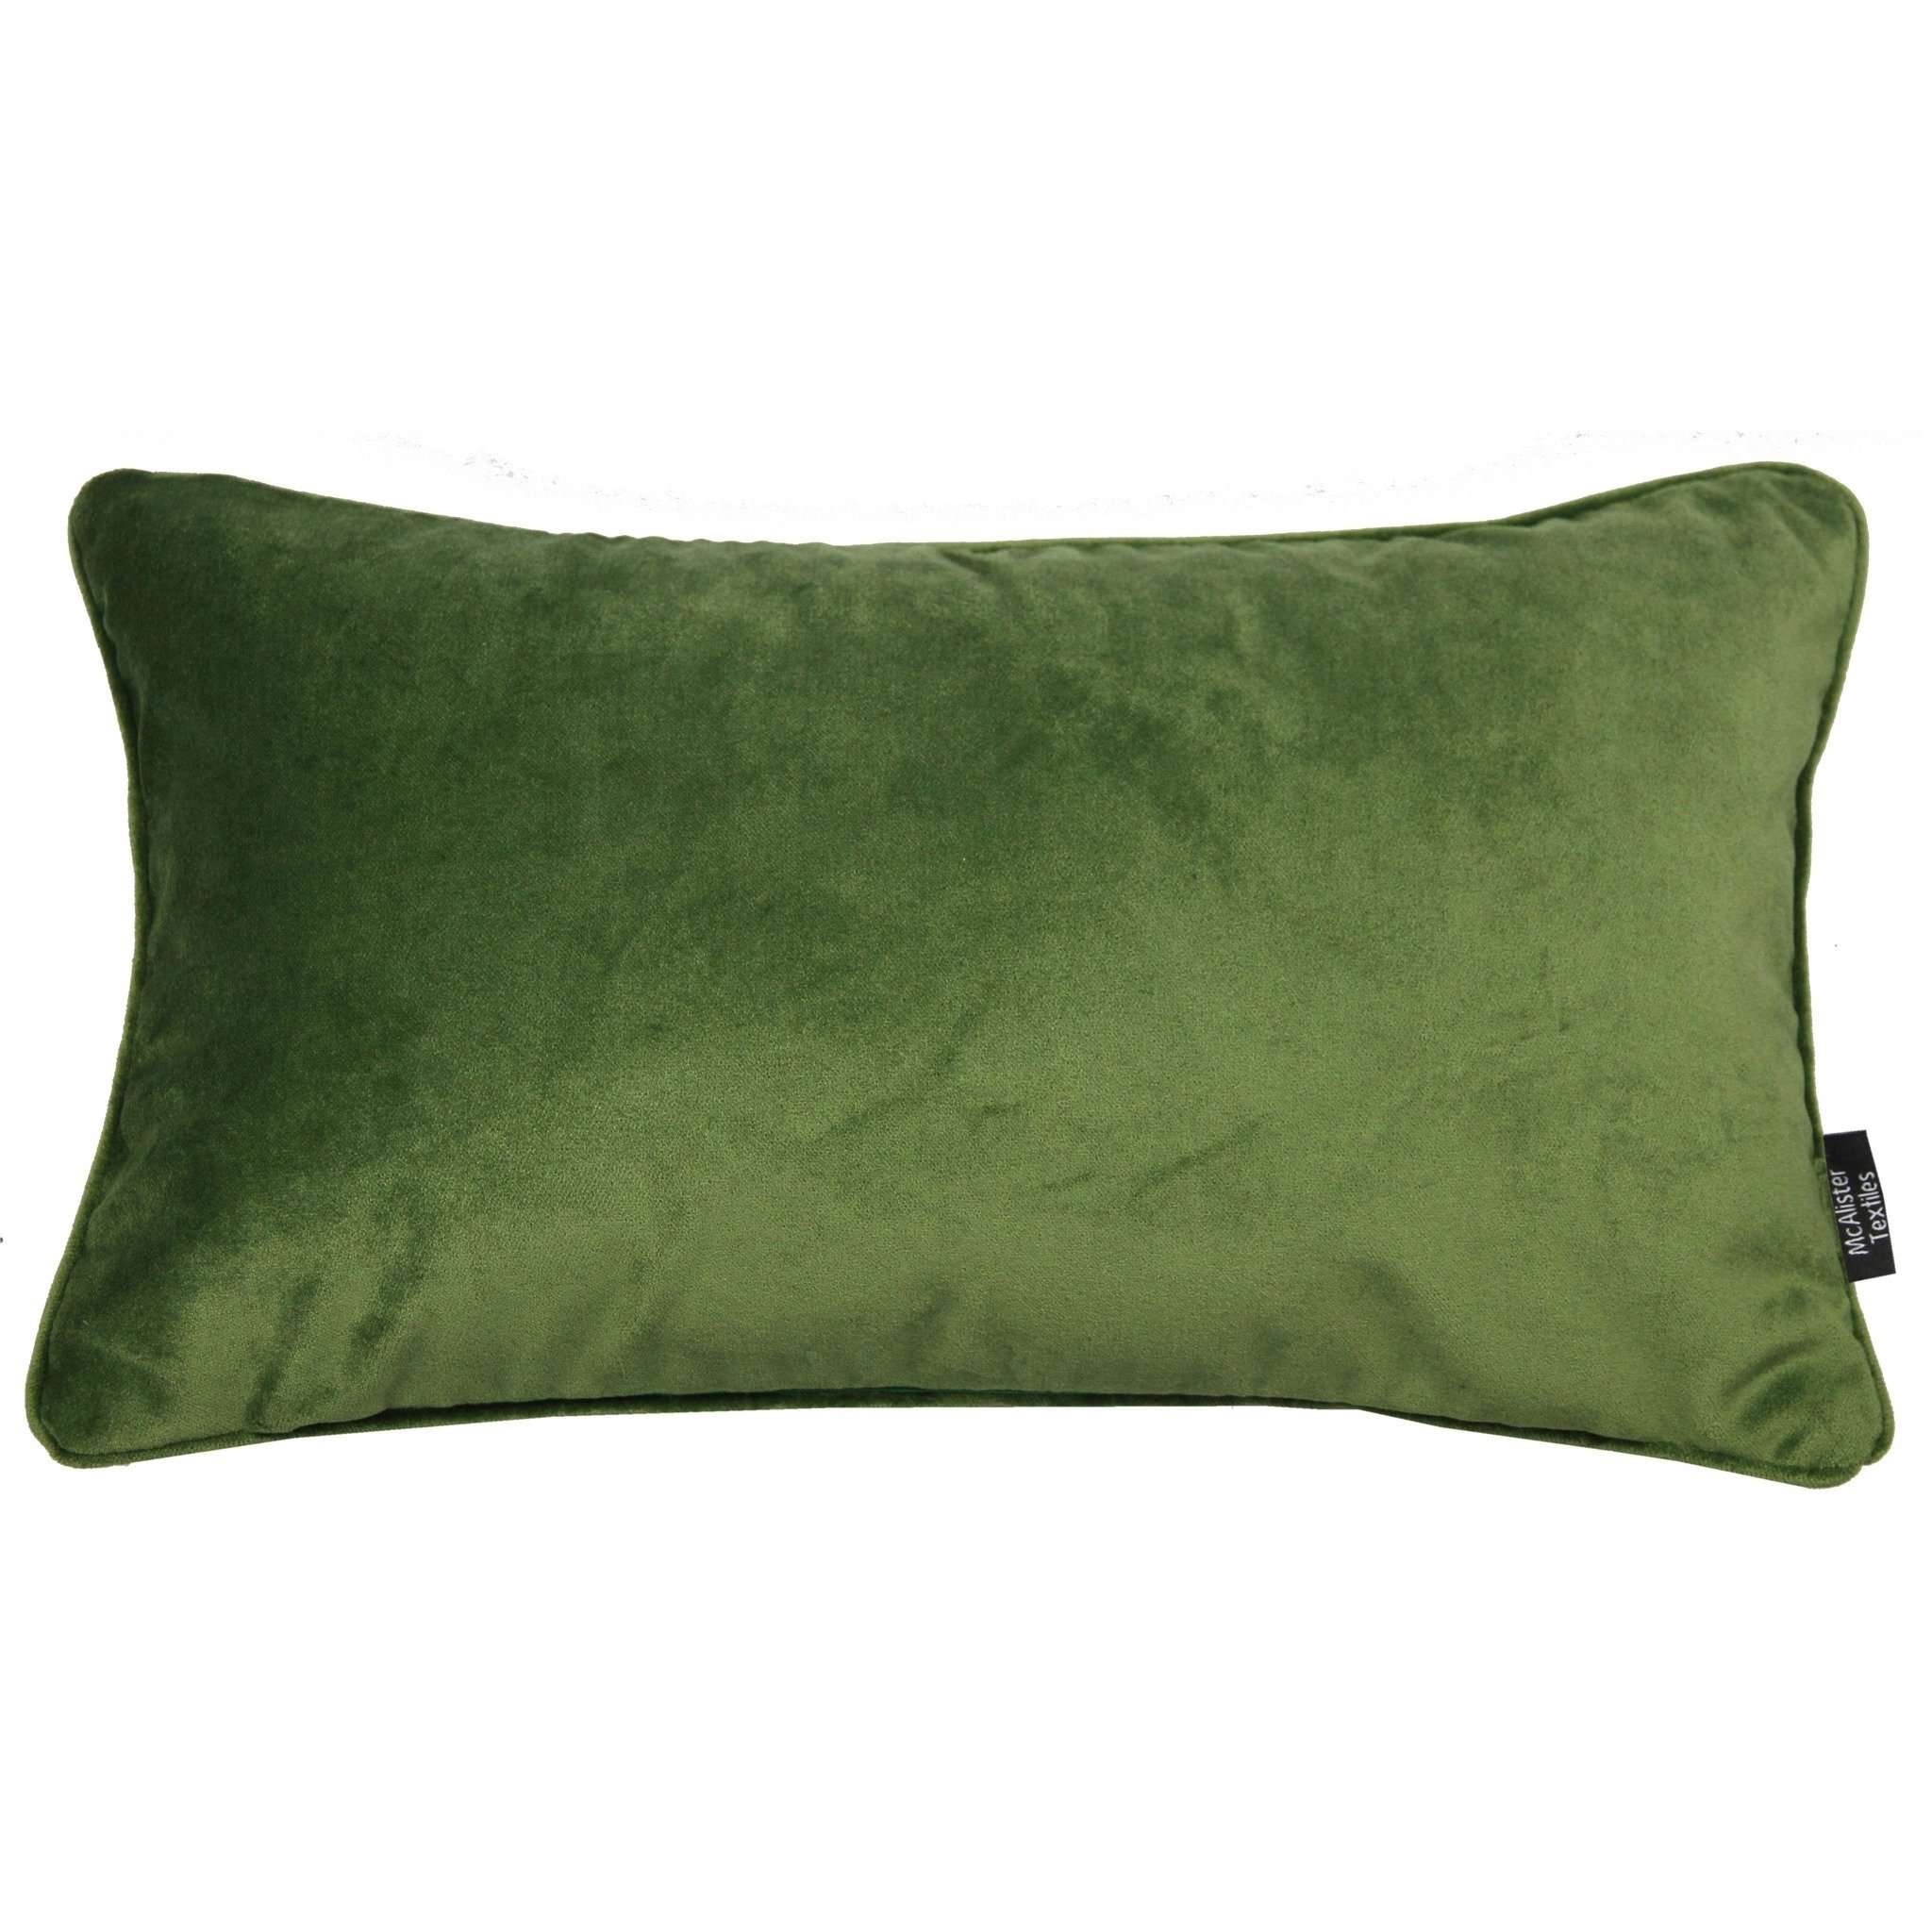 McAlister Textiles Matt Fern Green Piped Velvet Pillow Pillow Cover Only 50cm x 30cm 